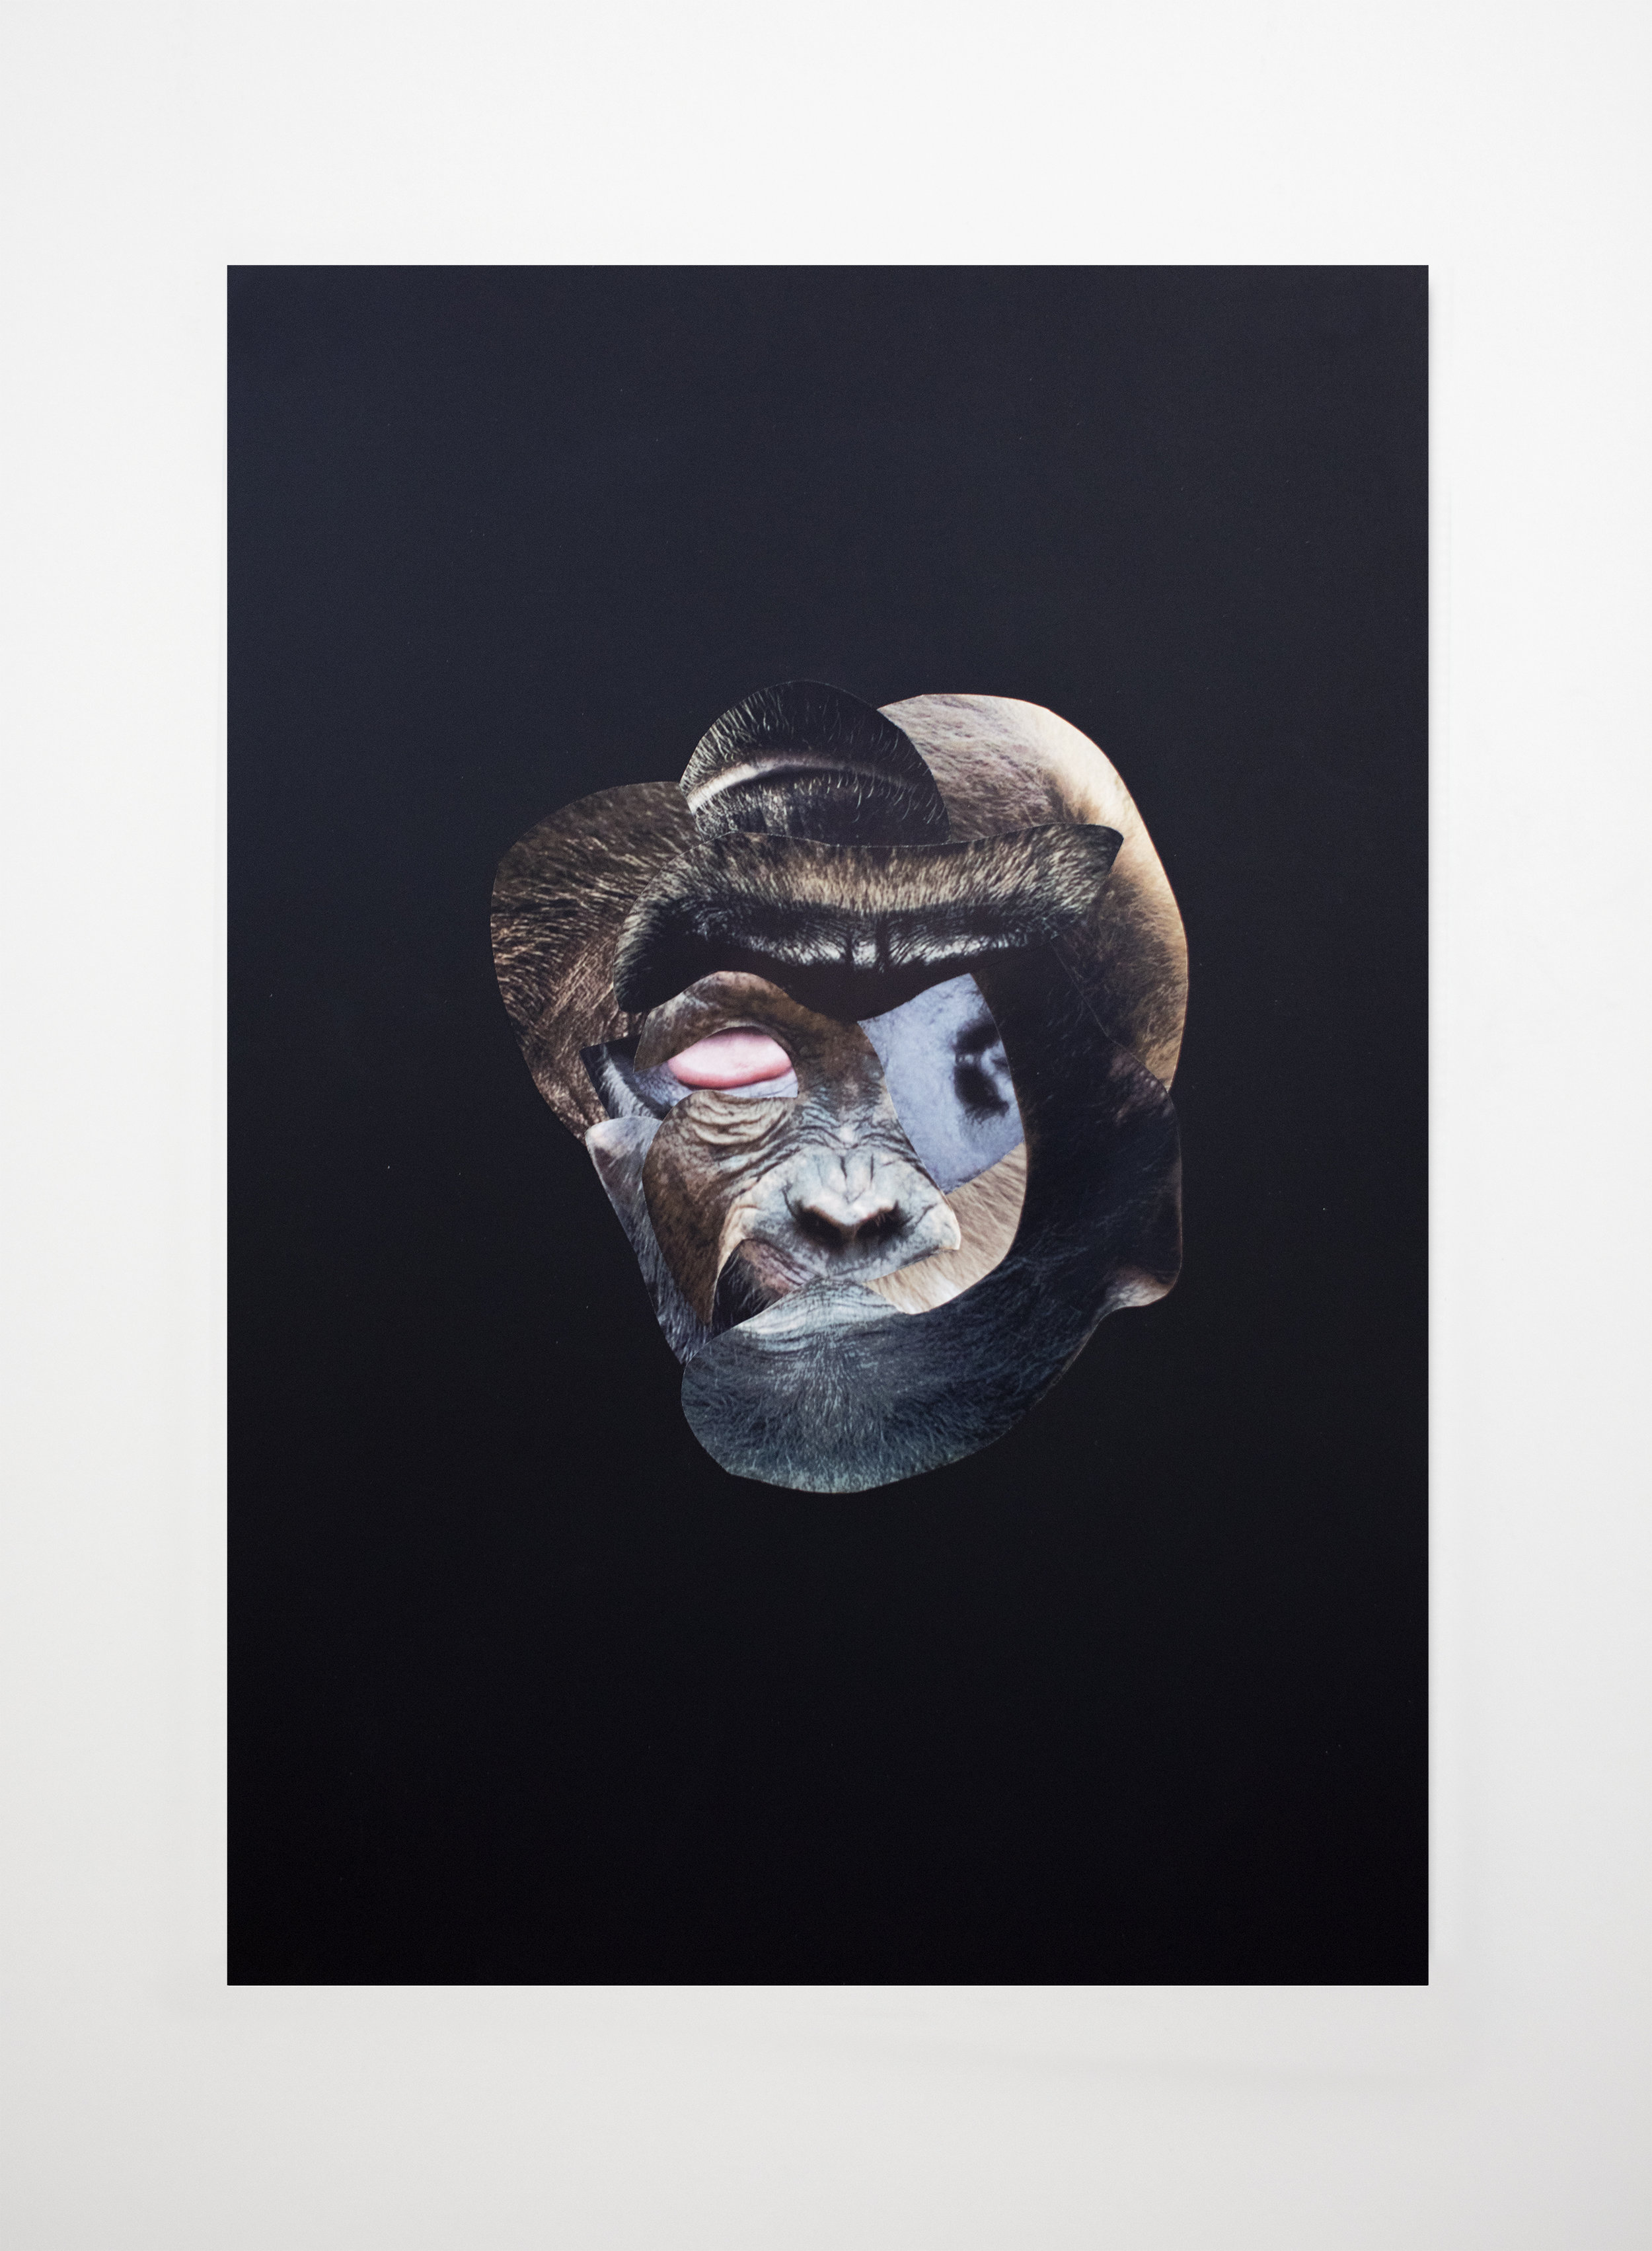  Les restes No.06  Collage sur papier noir / Collage on black paper  13 3/4 X 19 3/4 in / 33 X 50 cm   